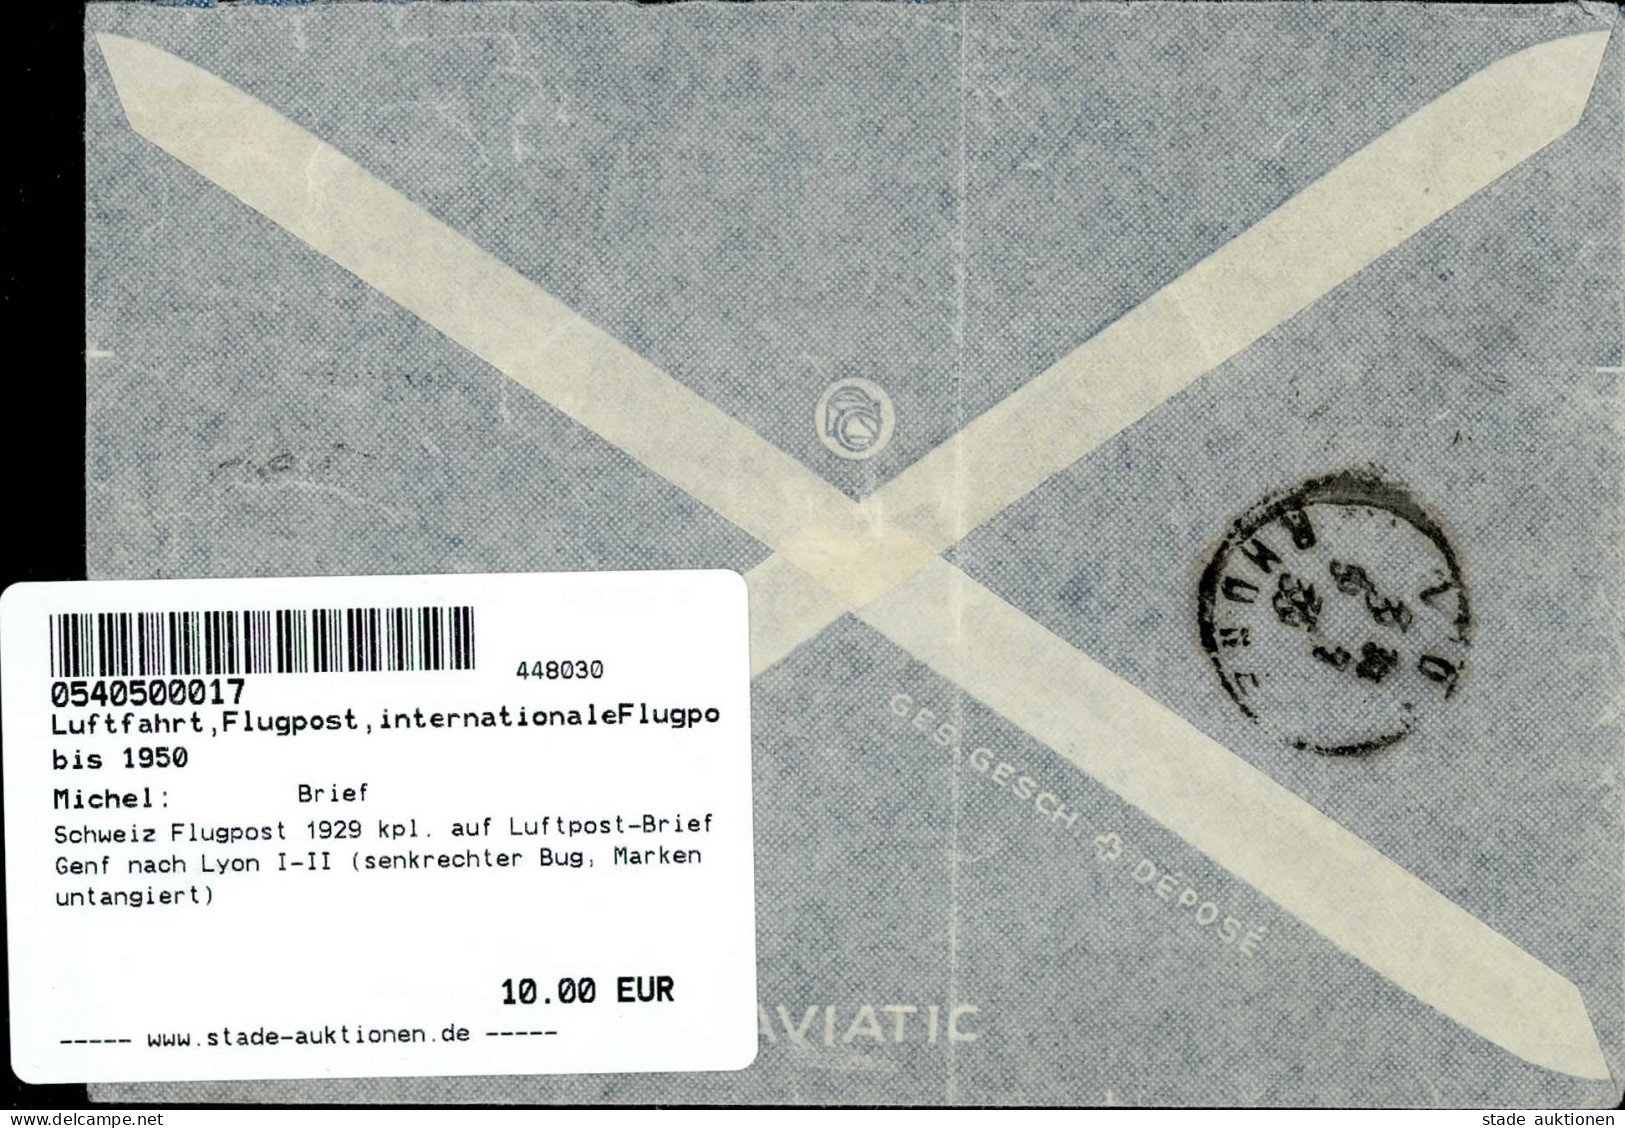 Schweiz Flugpost 1929 Kpl. Auf Luftpost-Brief Genf Nach Lyon I-II (senkrechter Bug, Marken Untangiert) - Guerre 1914-18